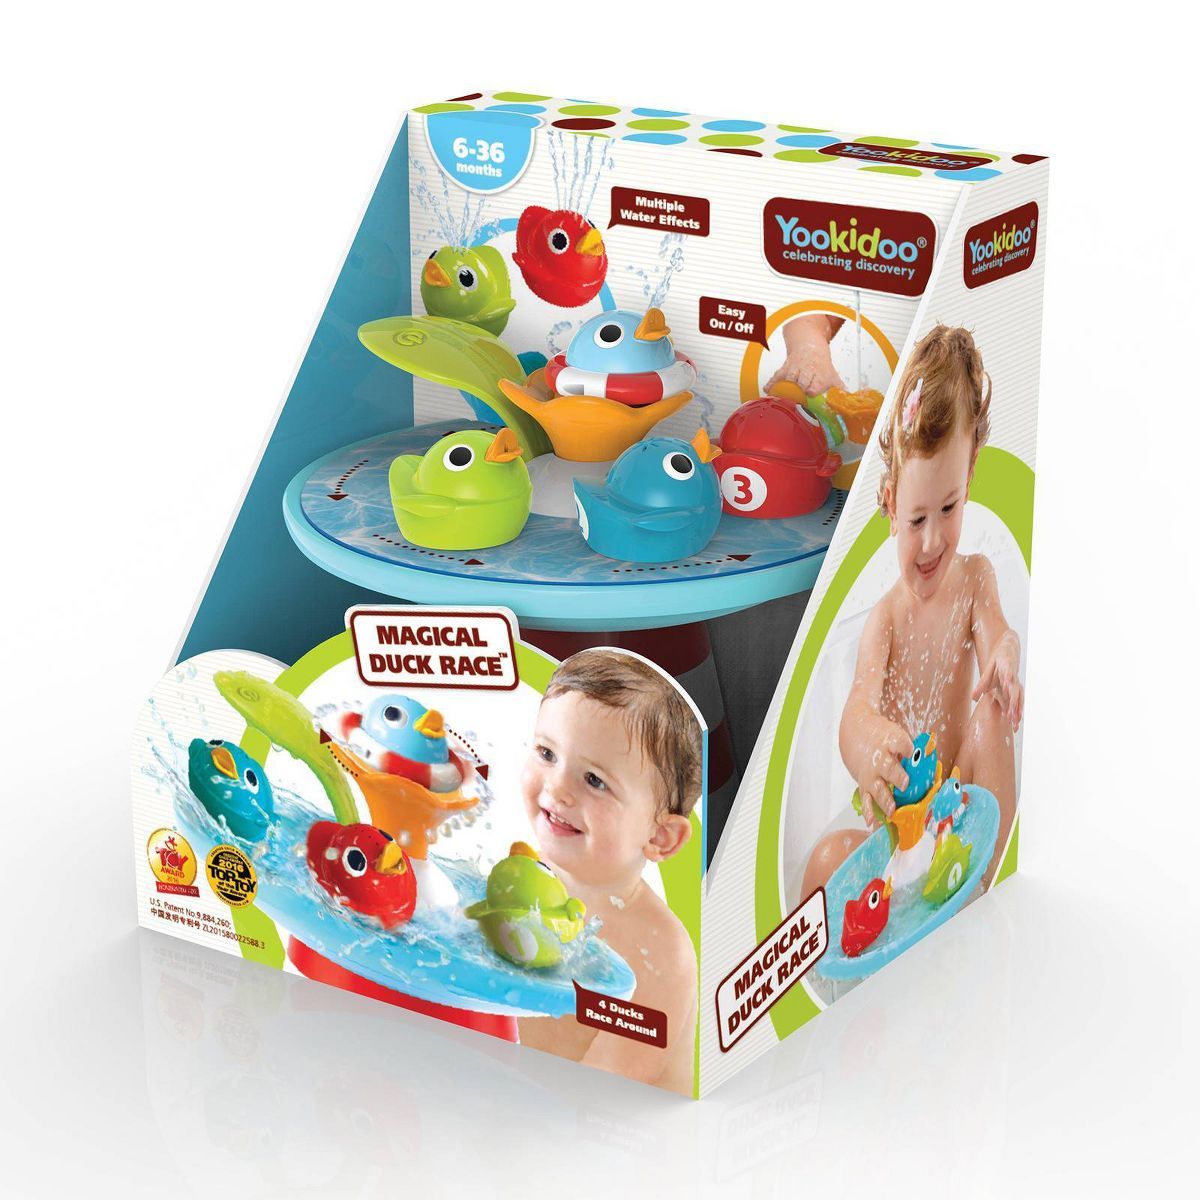 Yookidoo Magical Duck Race Bath Toy | Target